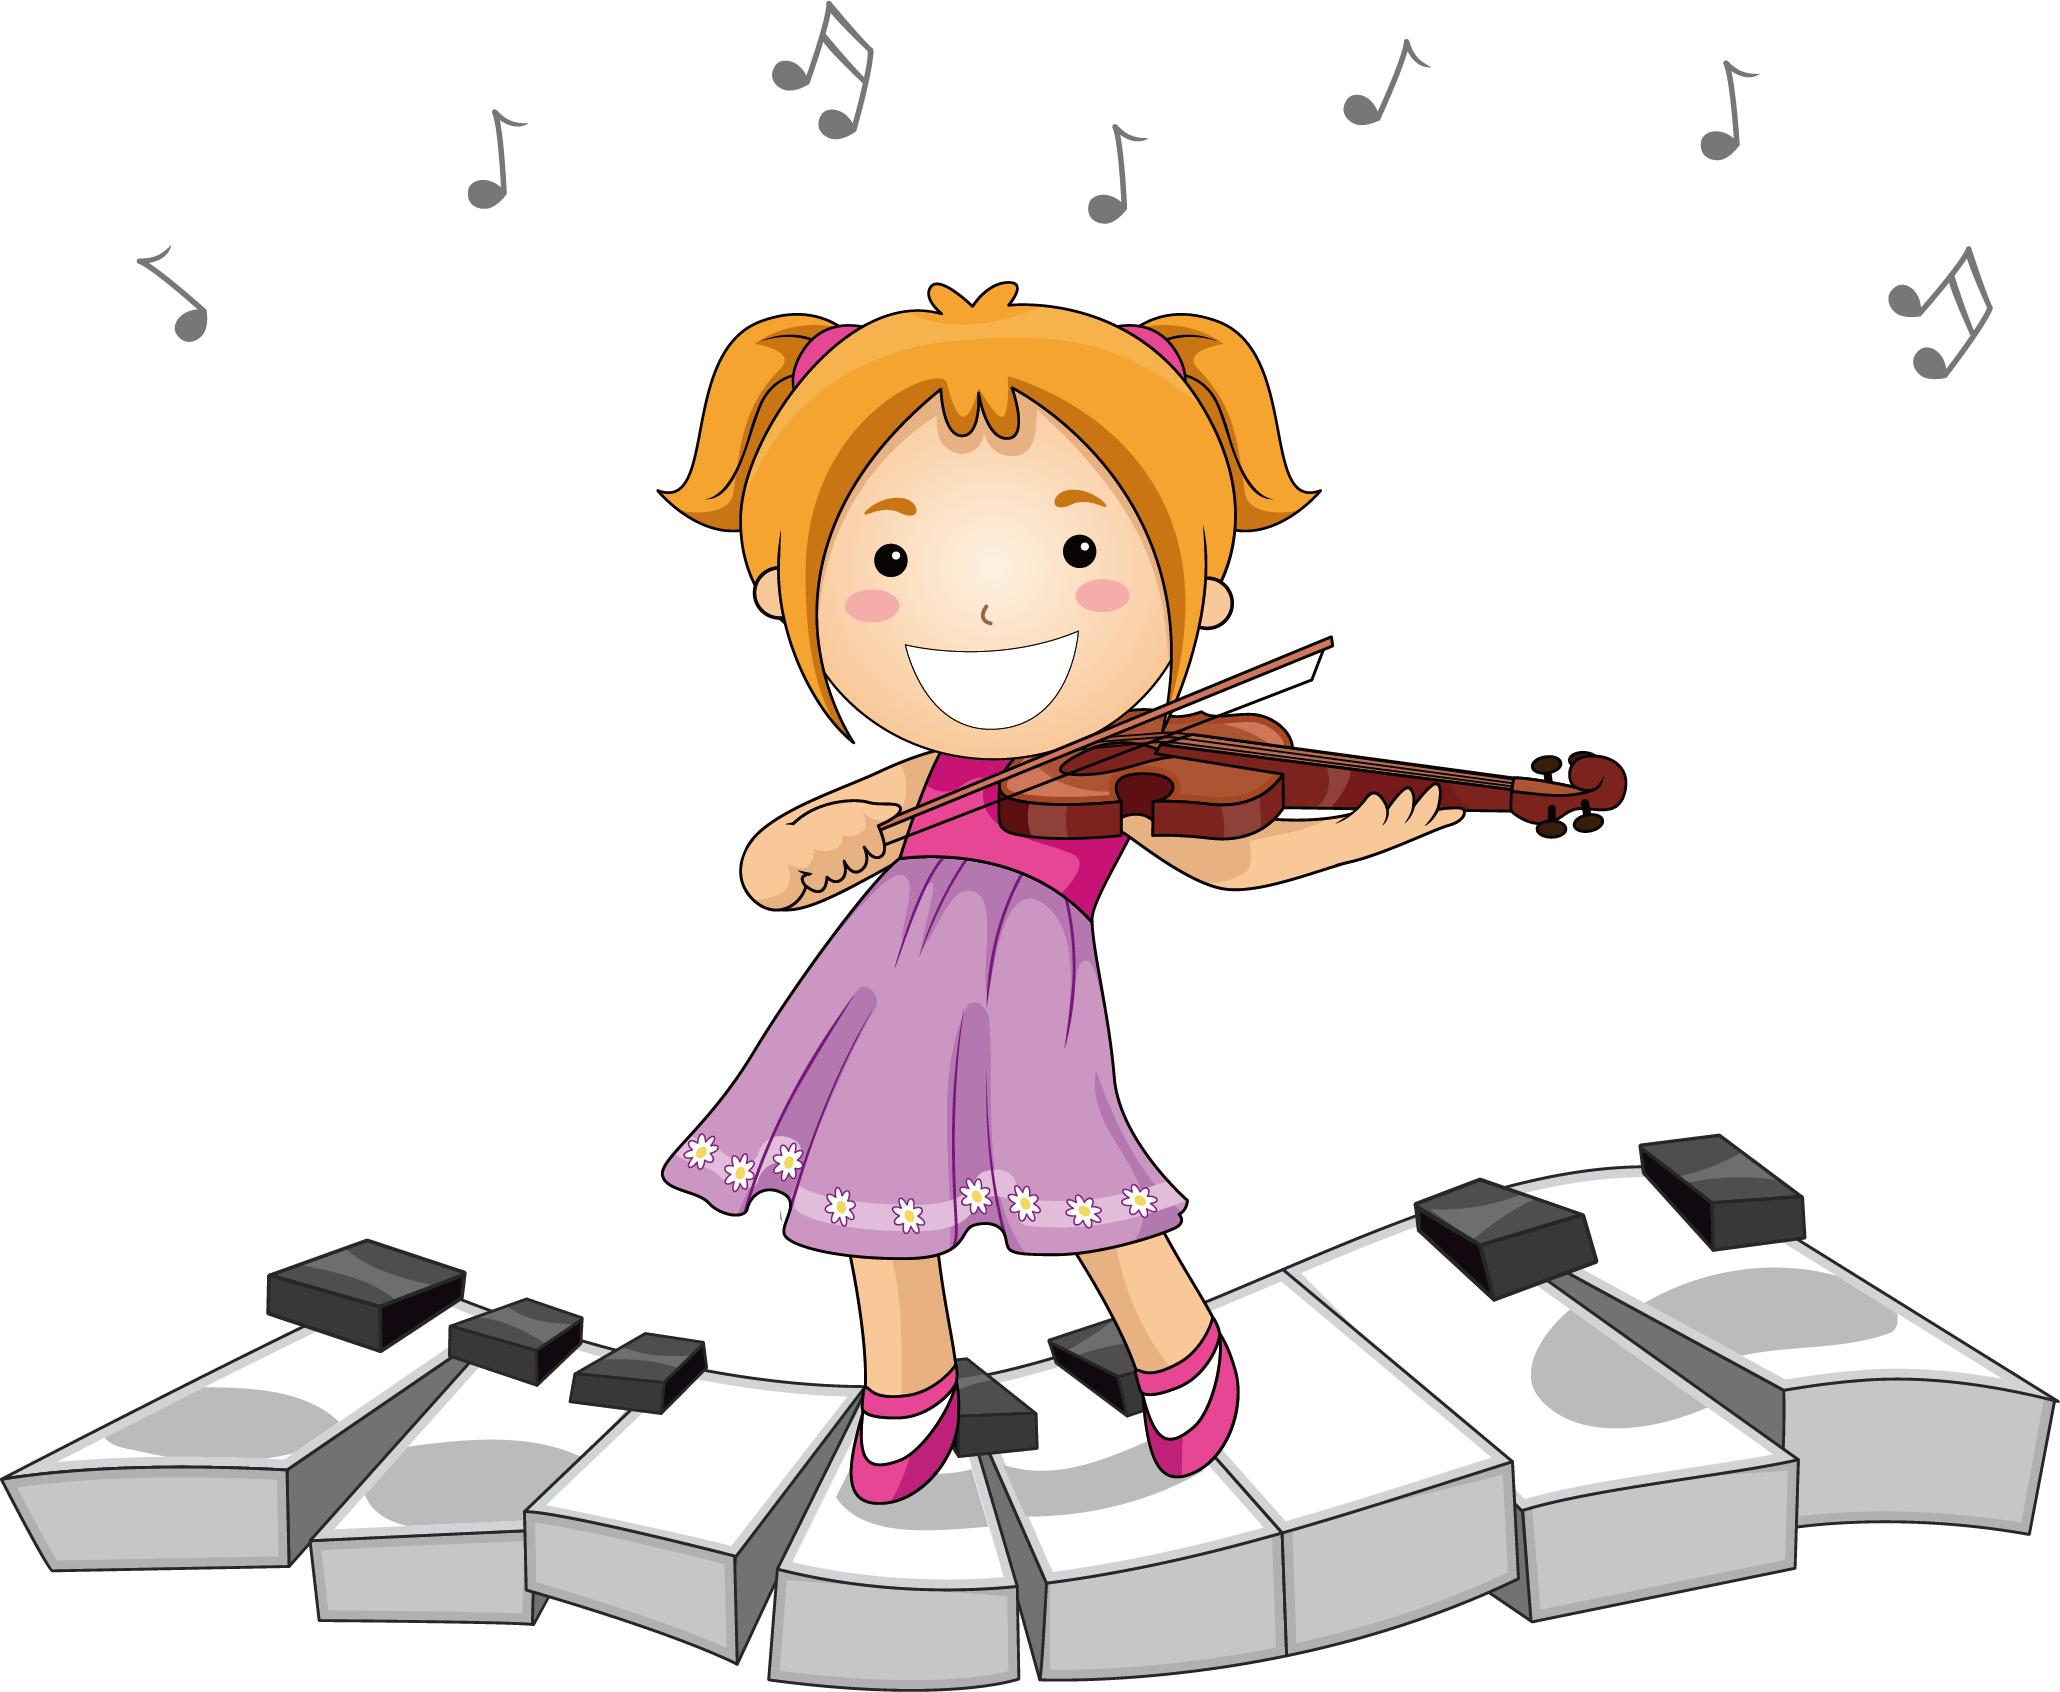 Играть петь песенки. Музыкальные инструменты для детей. Музыкальный рисунок для детей. Мультяшные музыканты. Девочка с музыкальным инструментом.